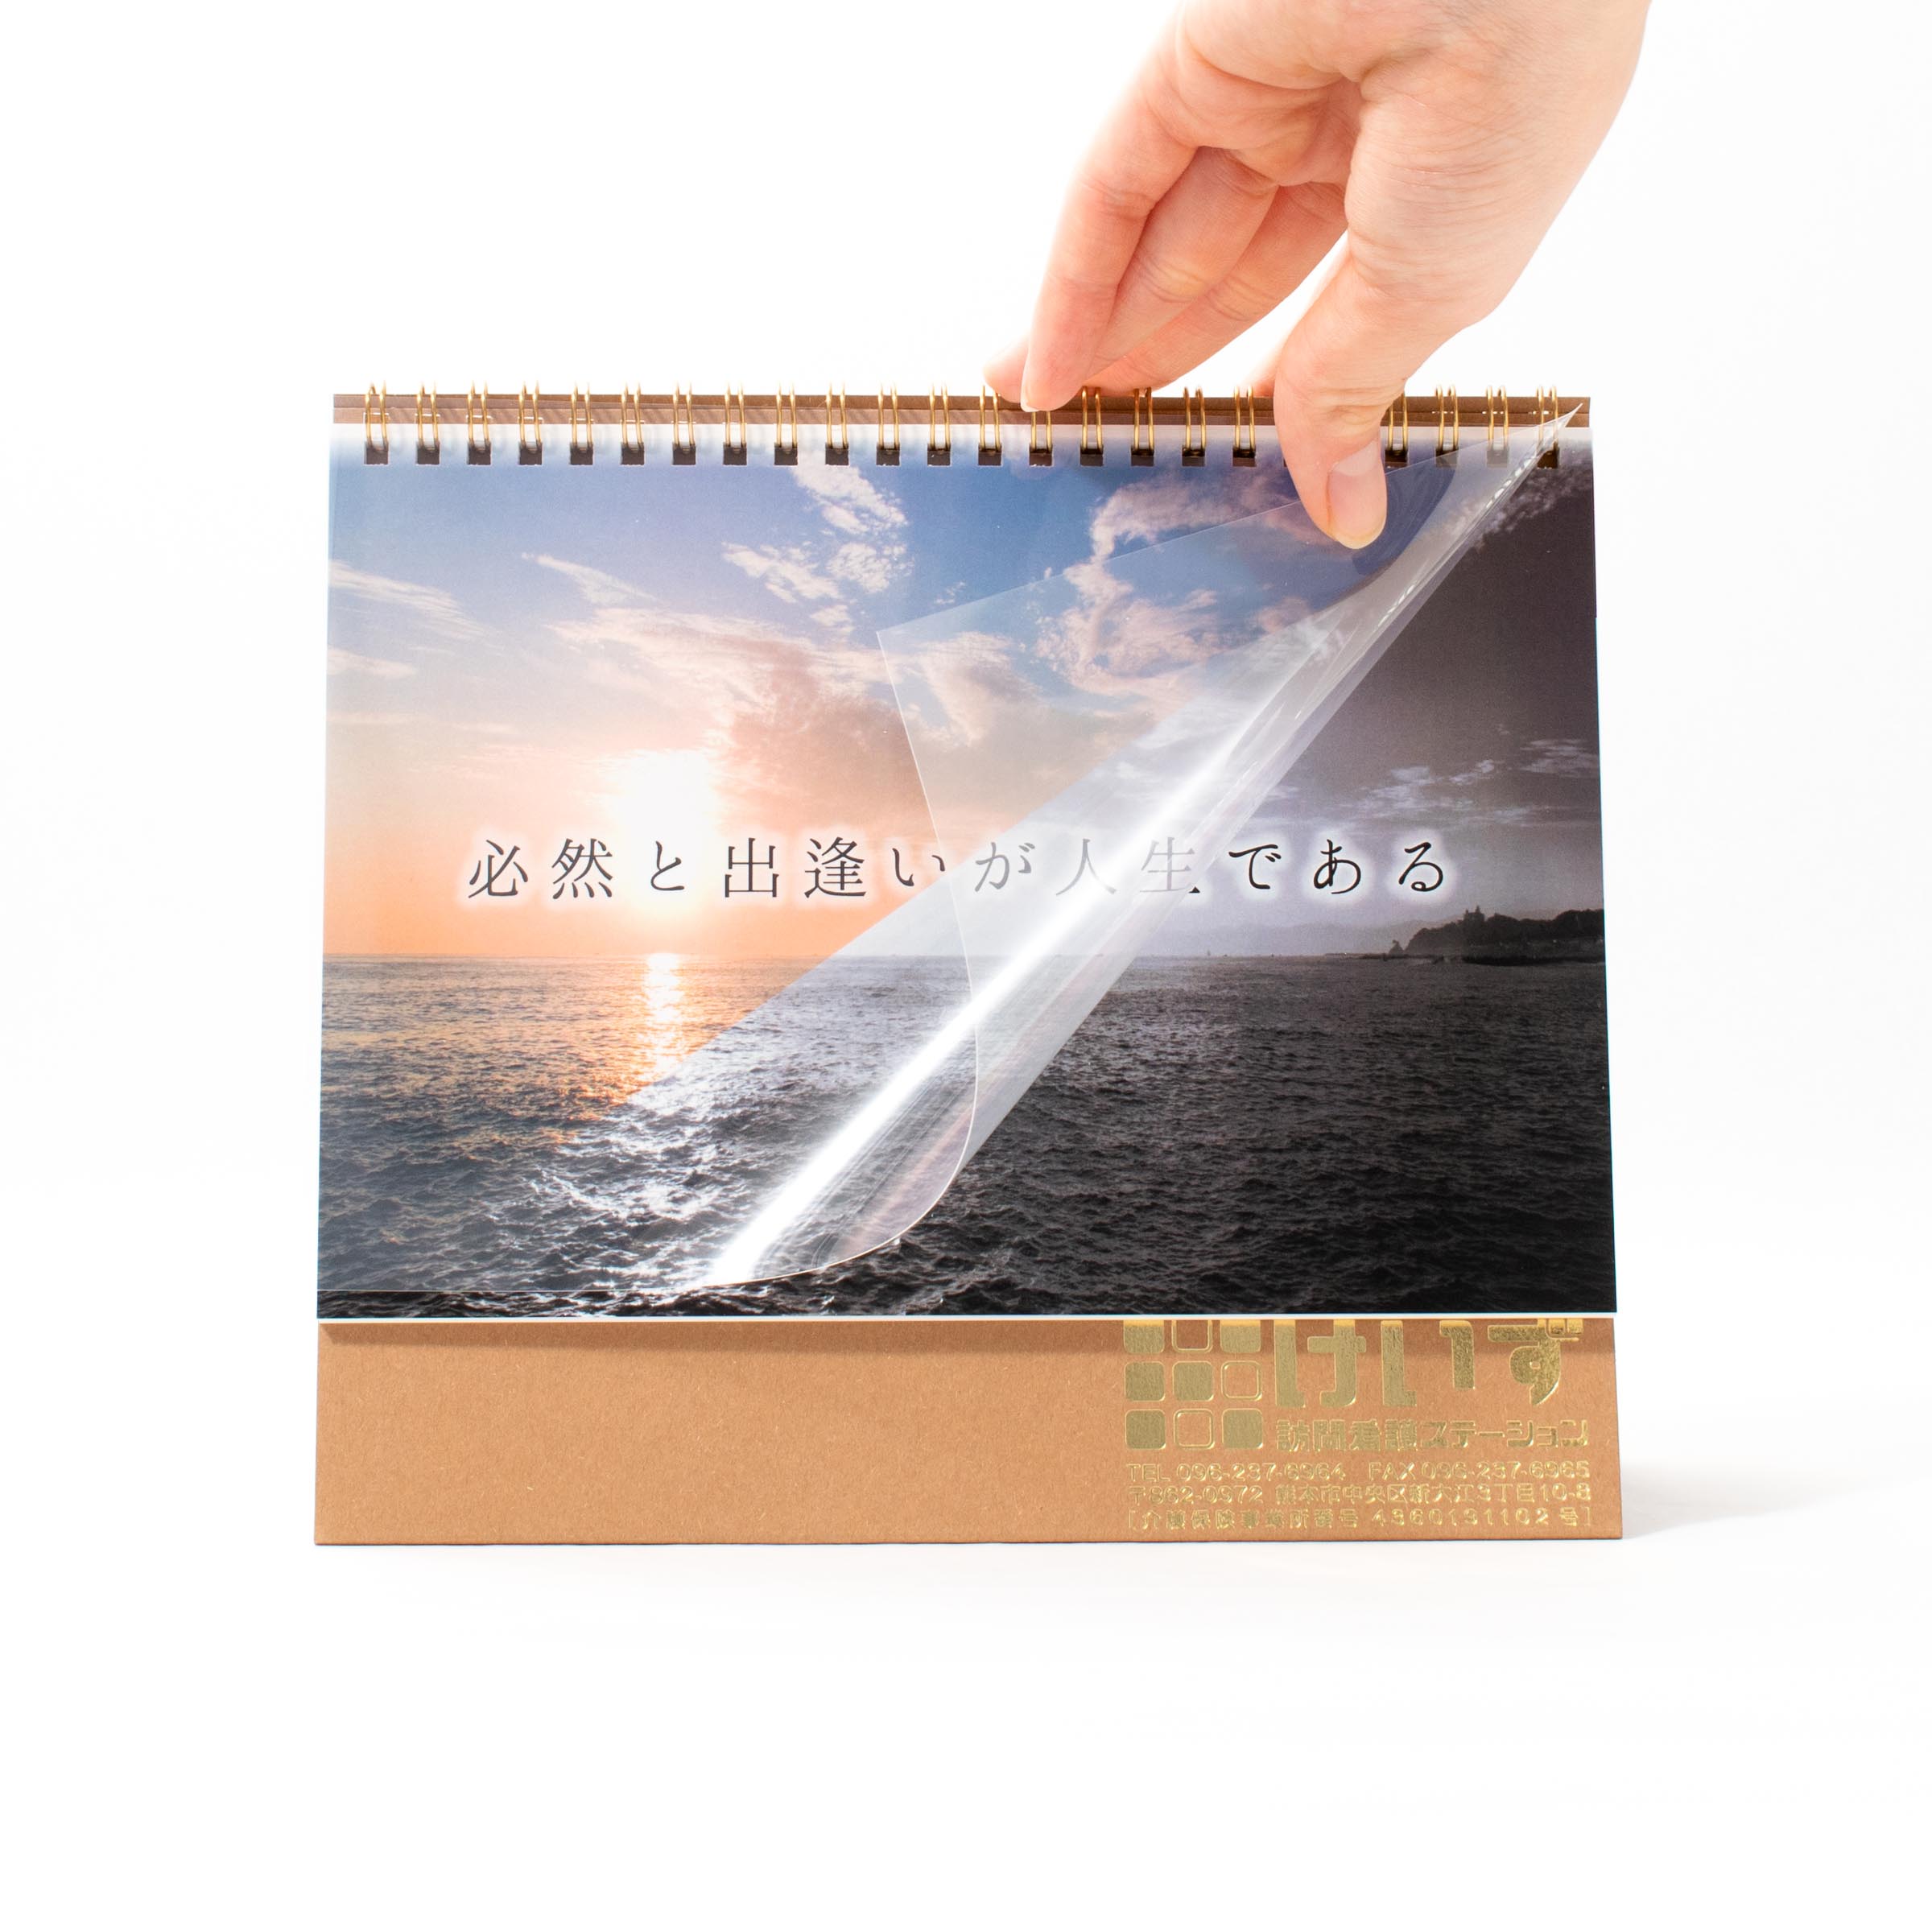 「株式会社REROTTO 様」製作のオリジナルカレンダー ギャラリー写真2